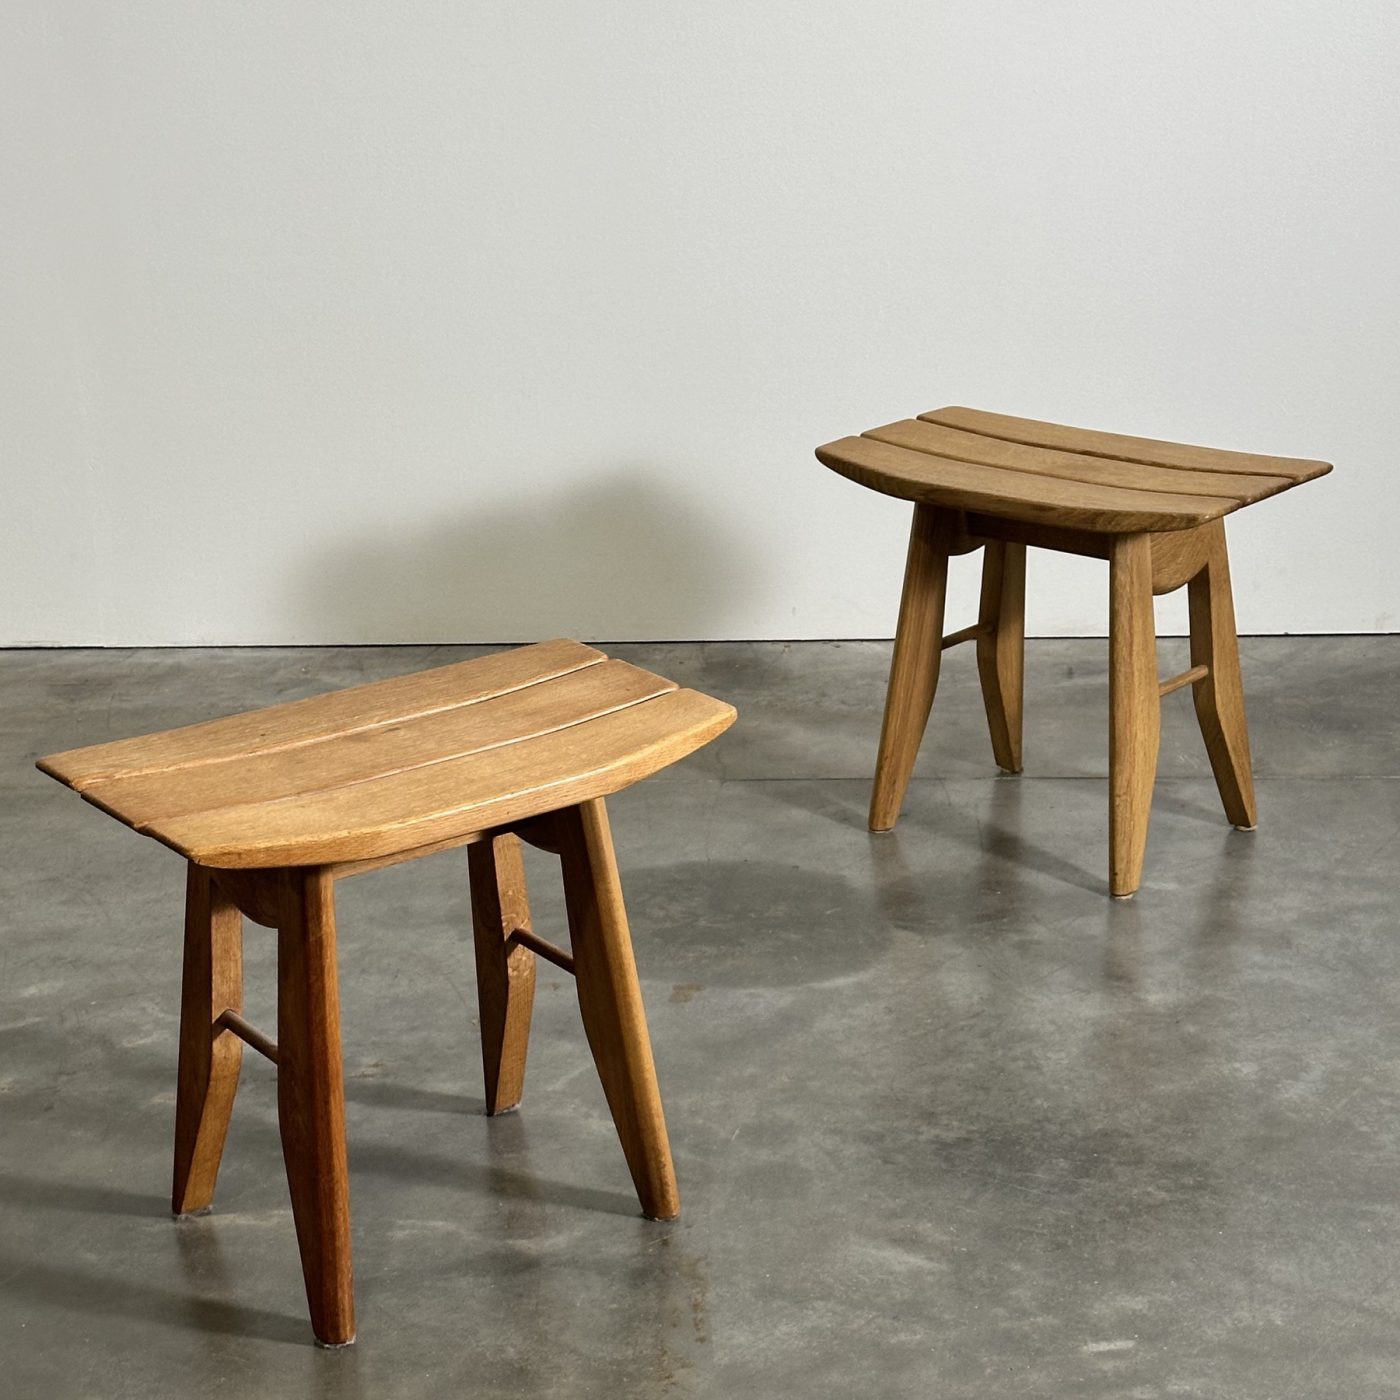 objet-vagabond-guillerme-stools0007